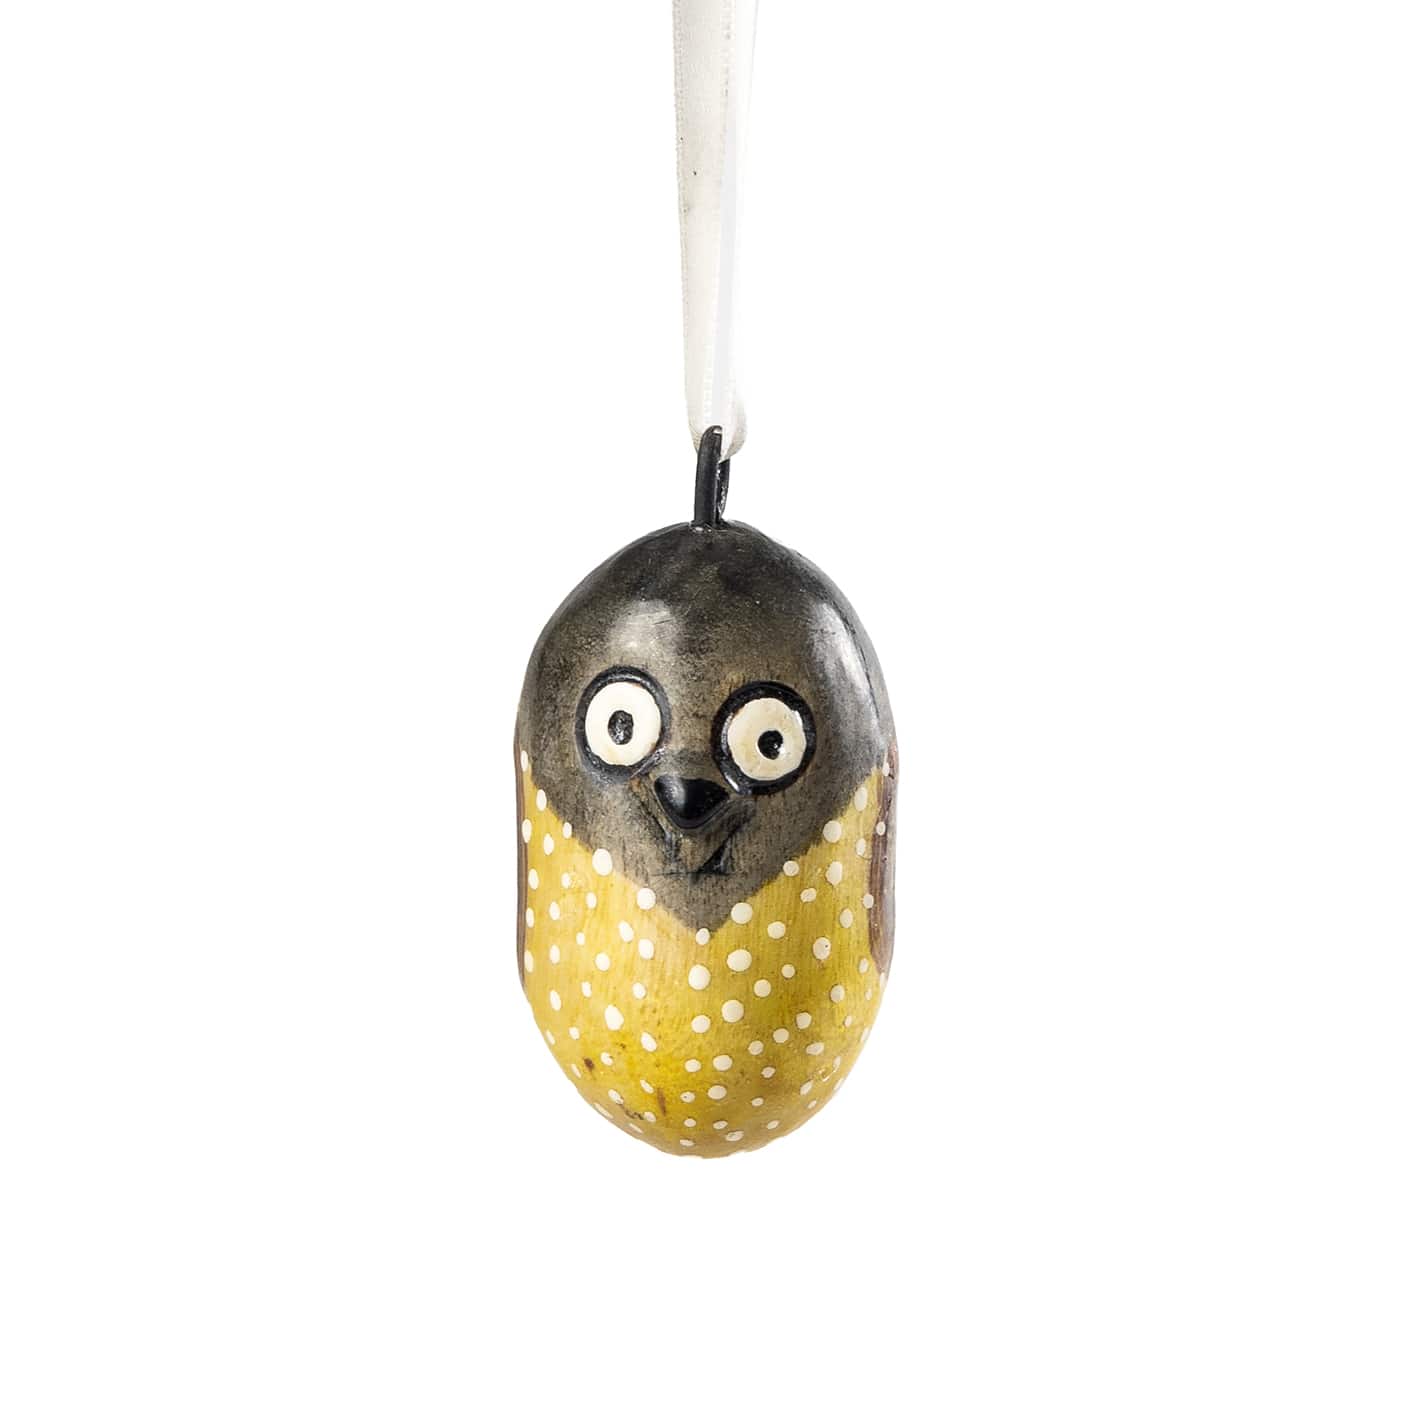 Mifuko Jacaranda wood Ornament Wooden ornament | 4 owls ornament set